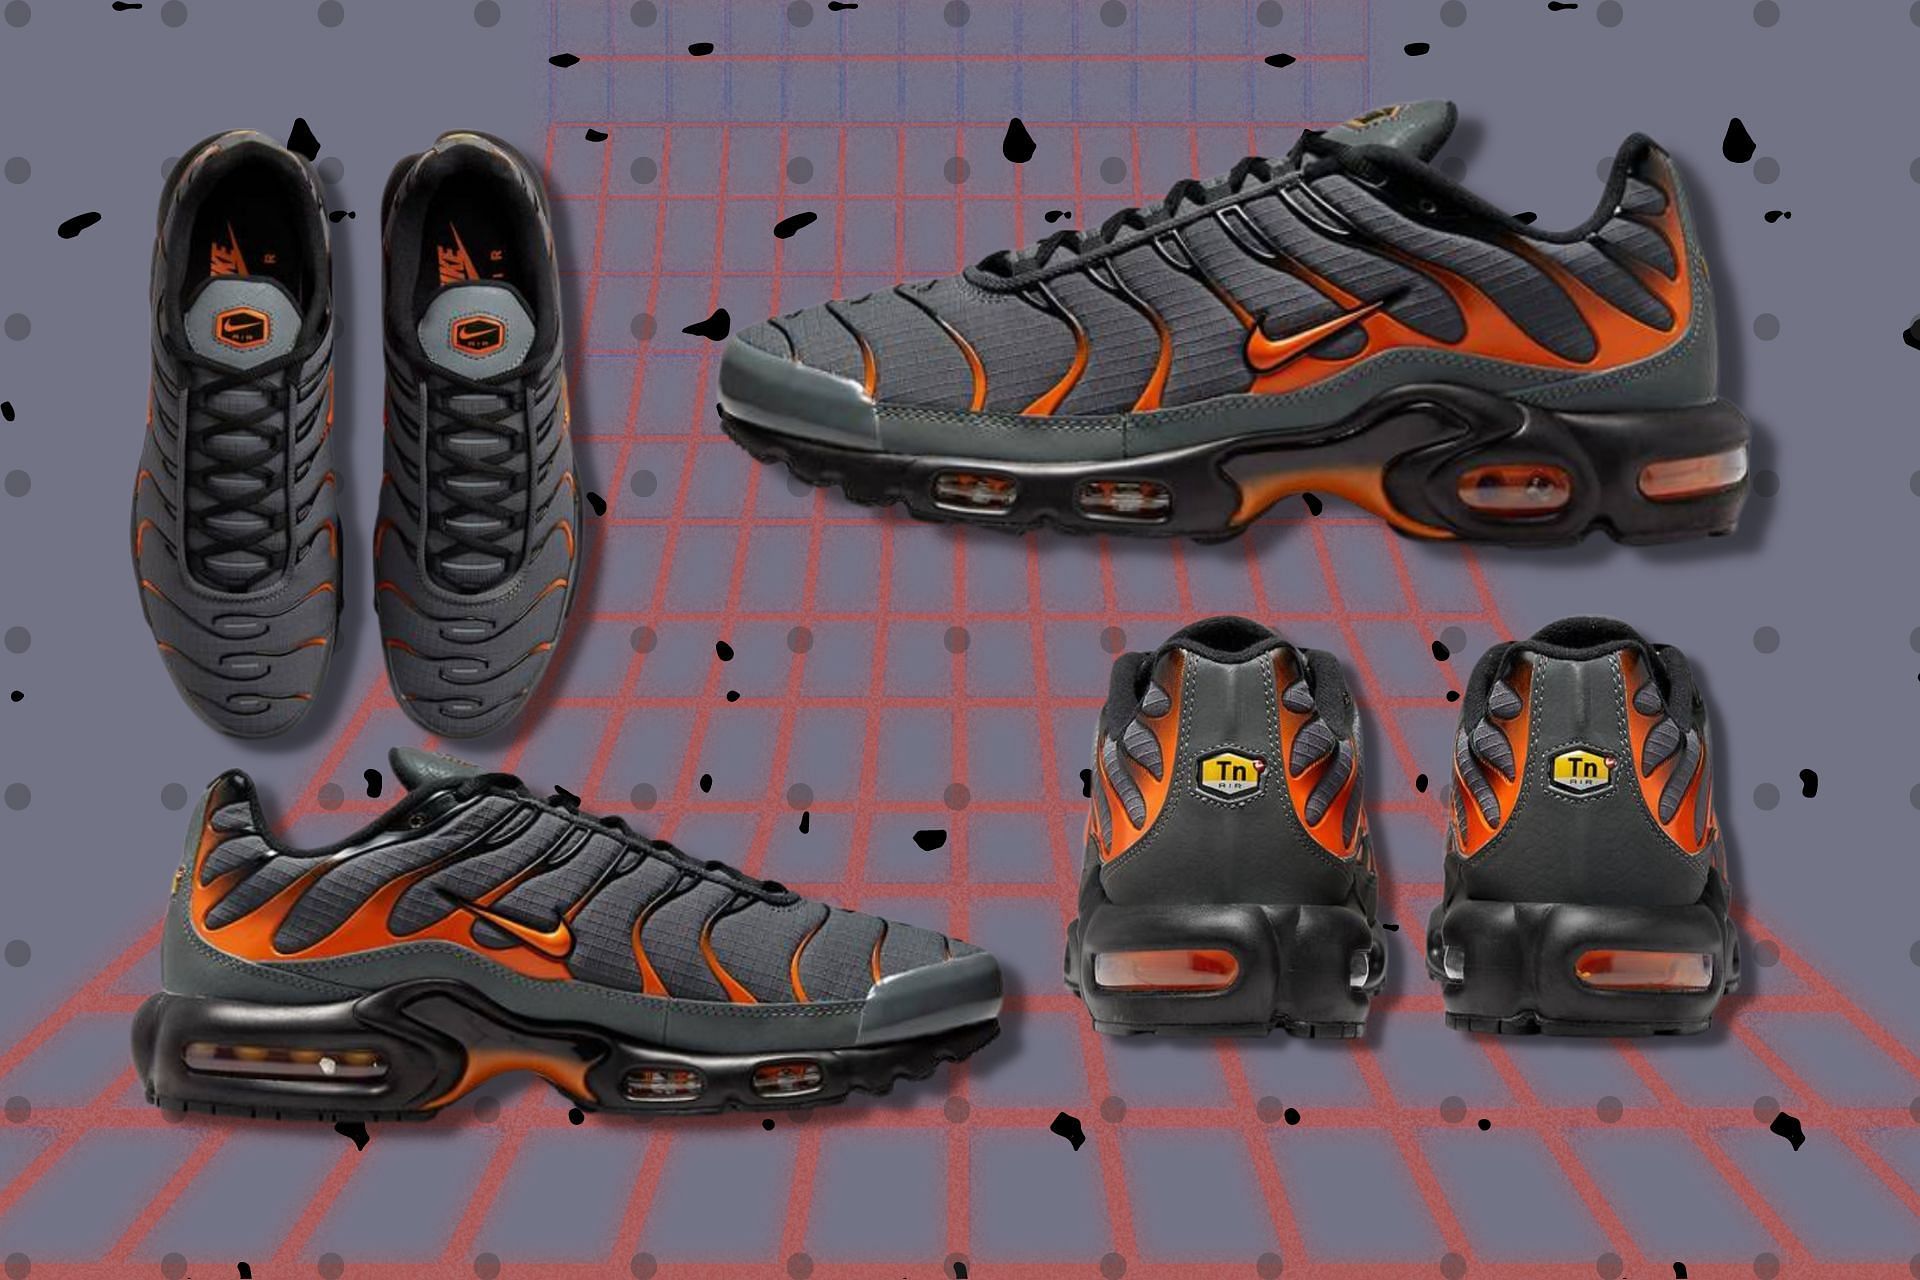 Take a detailed look at the impending Nike Air Max Plus Orange Grey sneakers (Image via Sportskeeda)